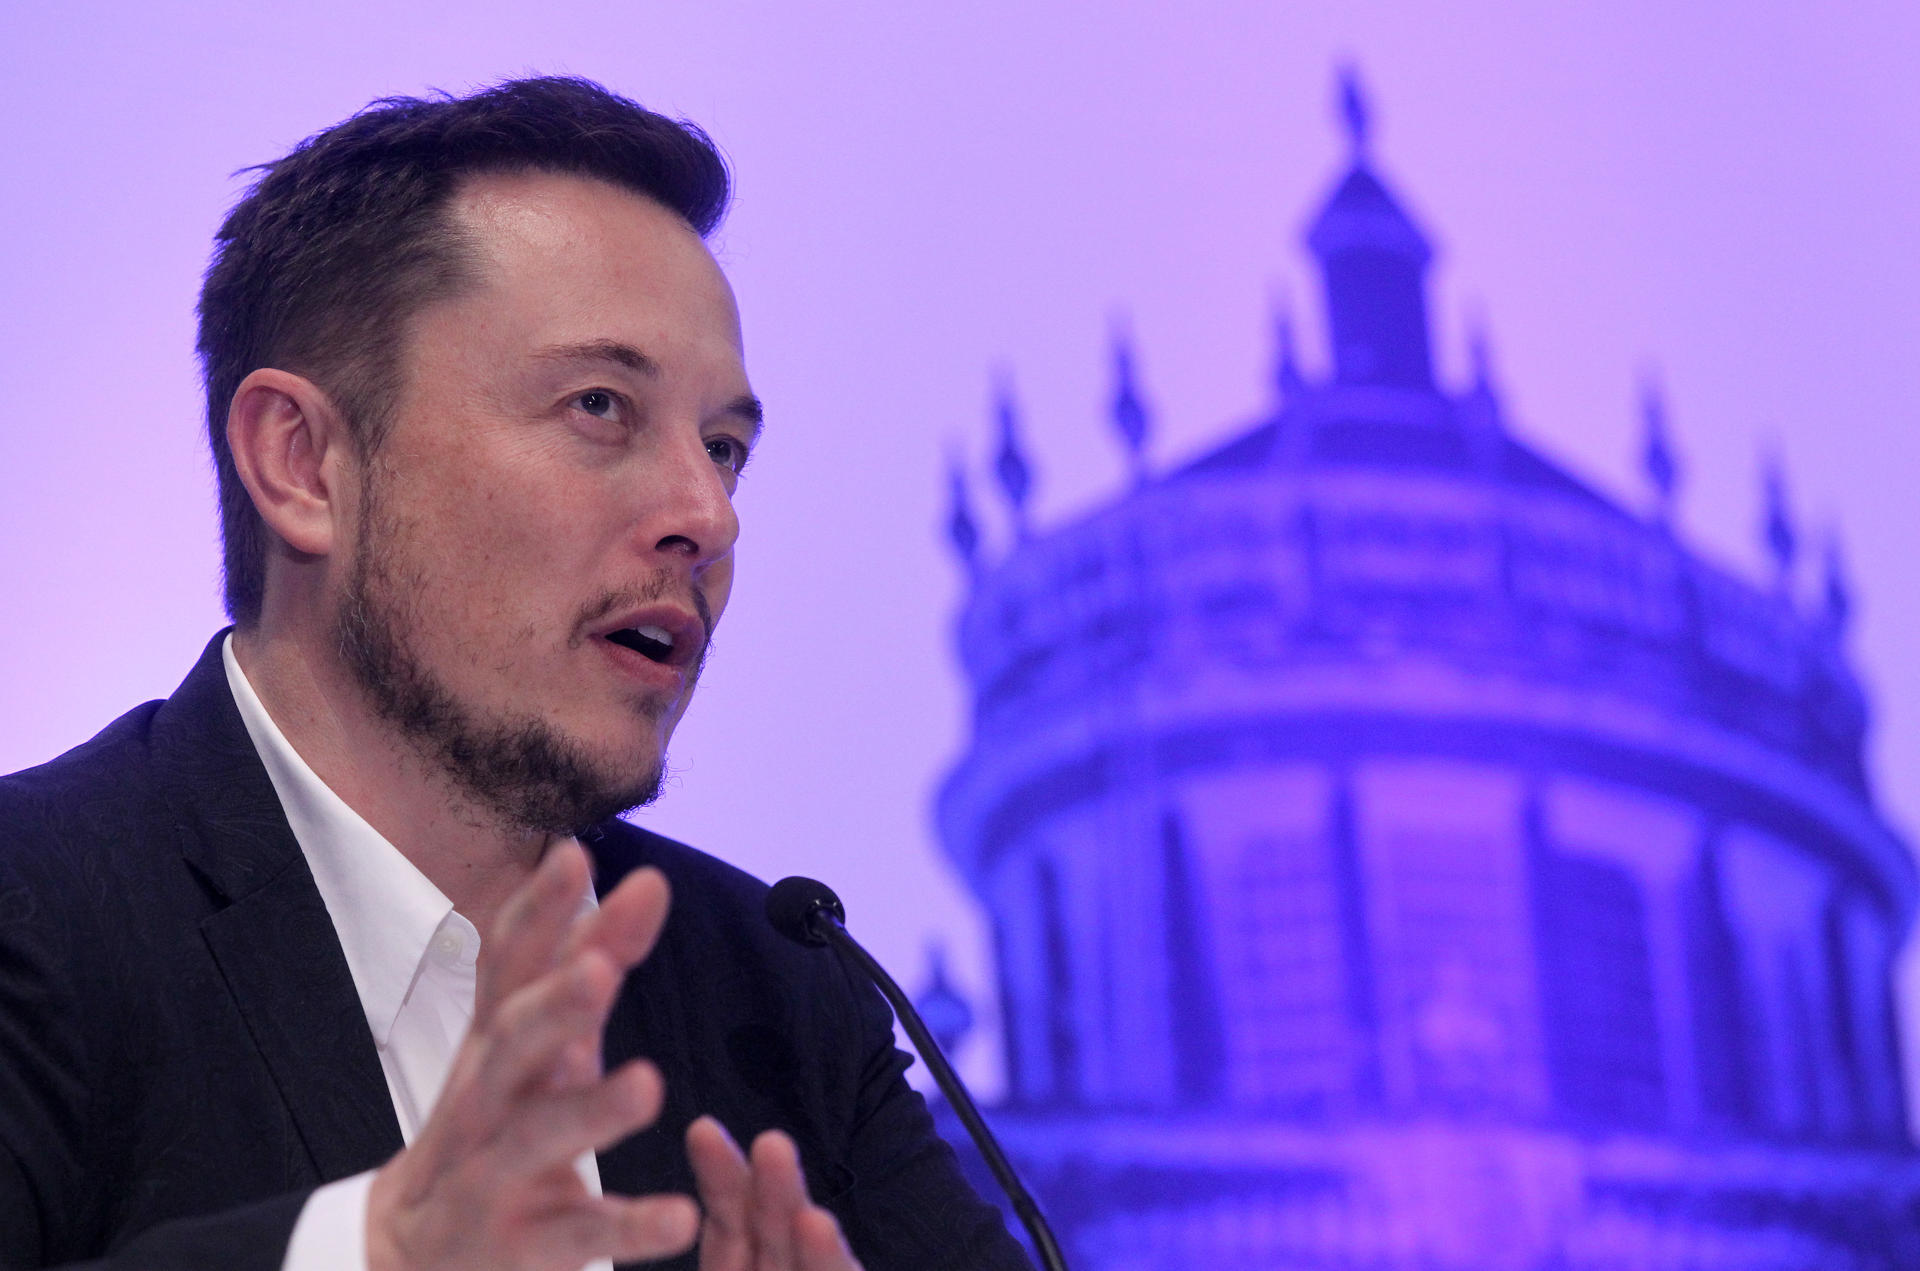 El inventor, físico y fundador de SpaceX, el sudafricano Elon Musk habla en una conferencia de prensa. Imagen de archivo. EFE/Ulises Ruiz Basurto
